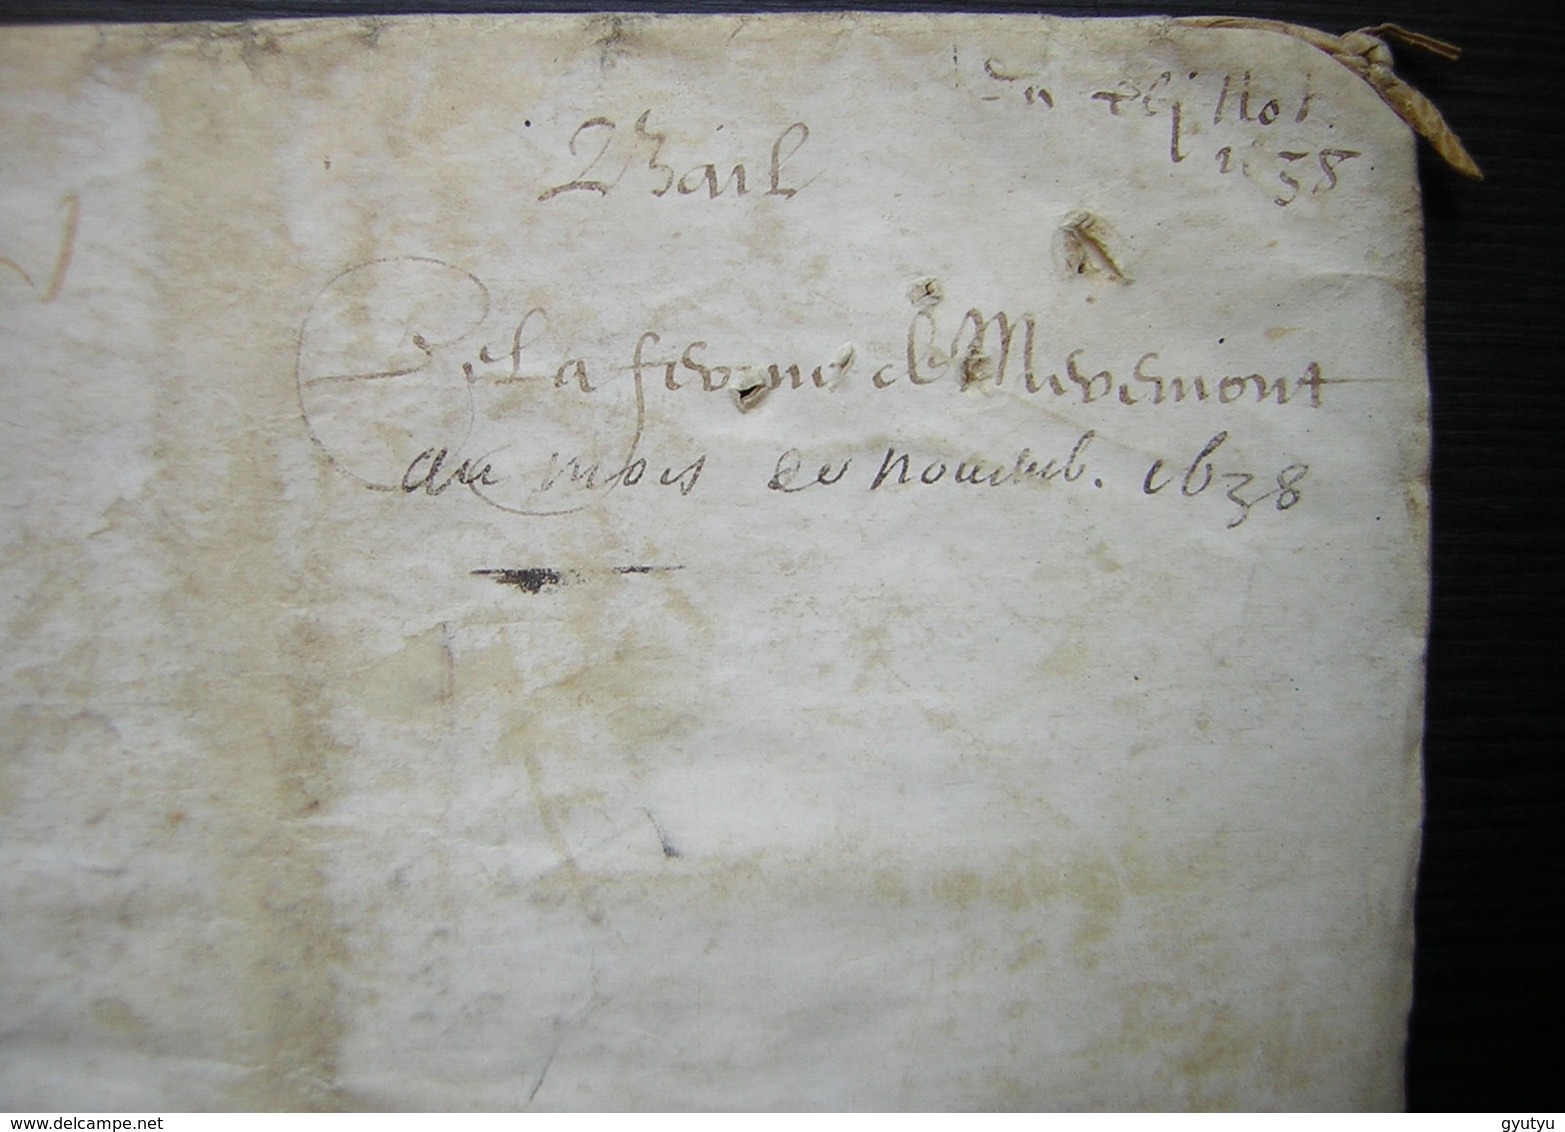 1638 parchemin de 12 pages bail de la ferme de Mermont Crépy Oise à Pierre Lavoisier et Augustin Béranger par Charmoluë